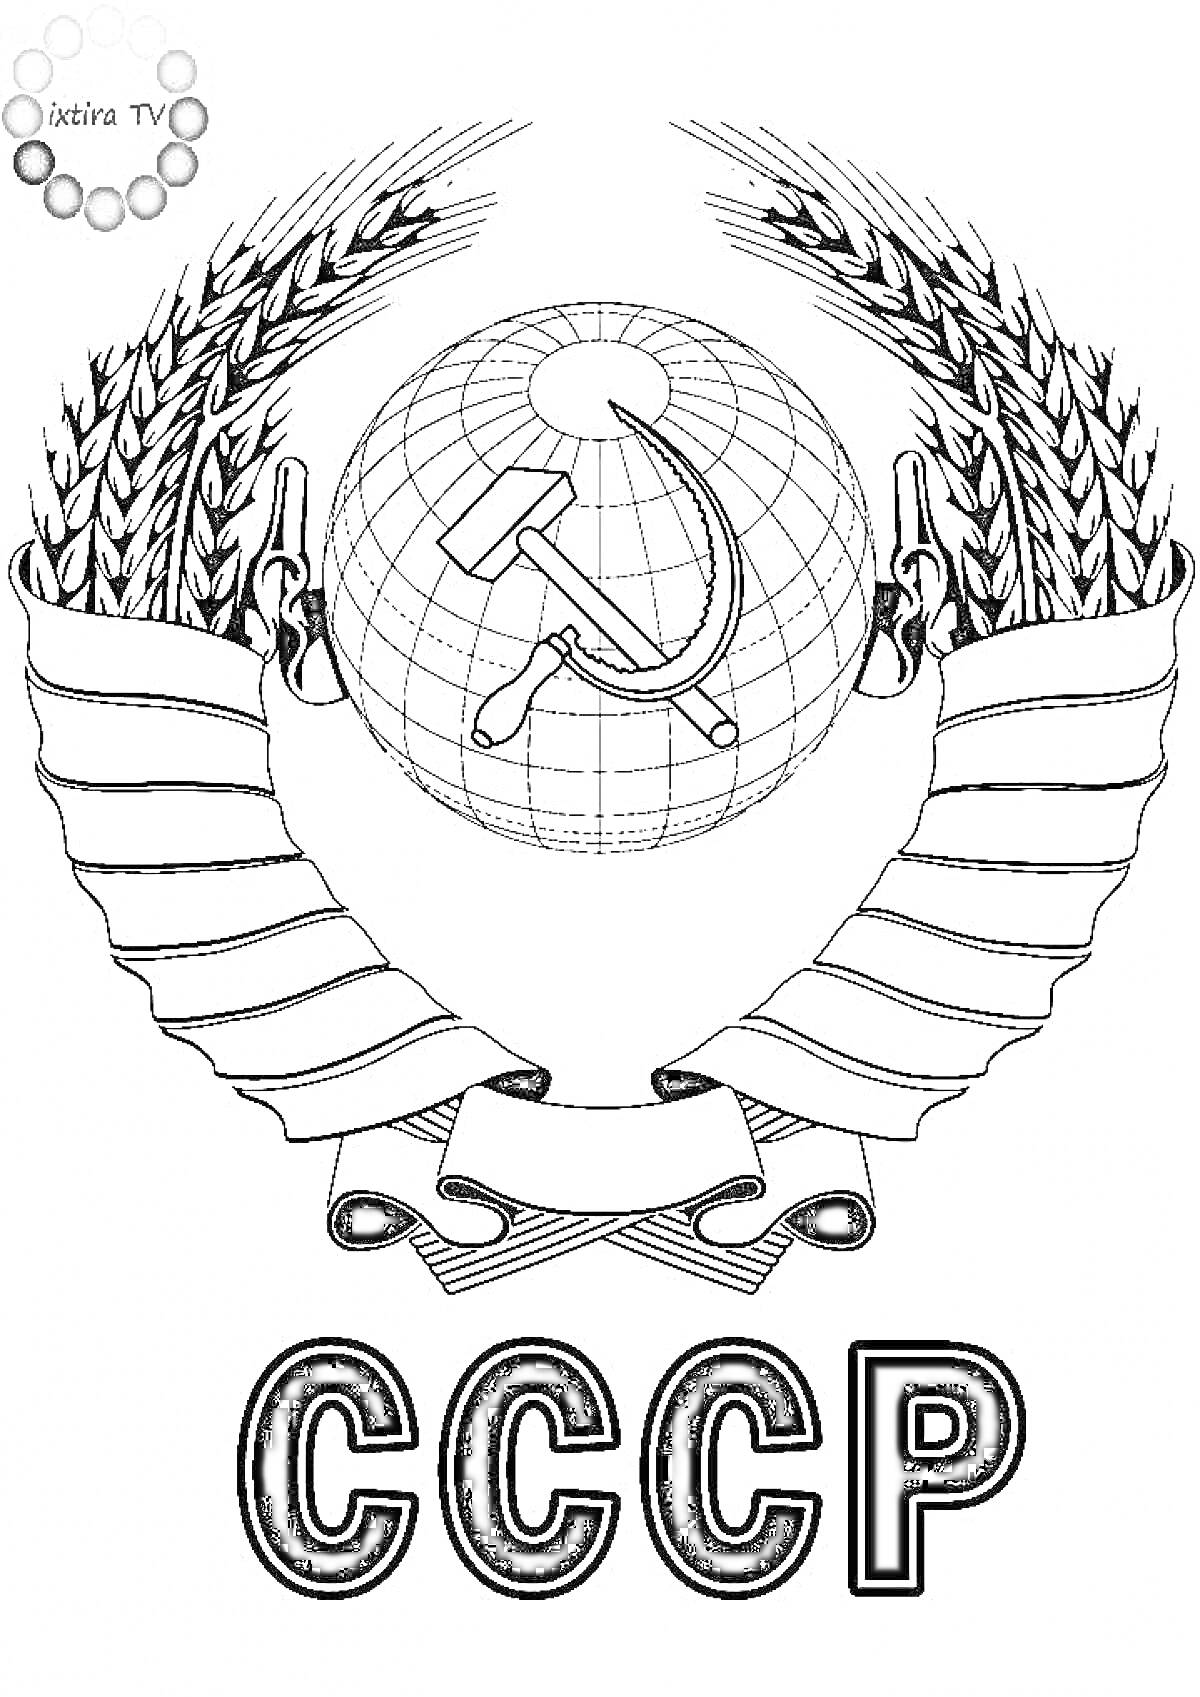 Раскраска Герб СССР с серпом и молотом на фоне земного шара, окруженного колосьями пшеницы и лентами, с буквами 